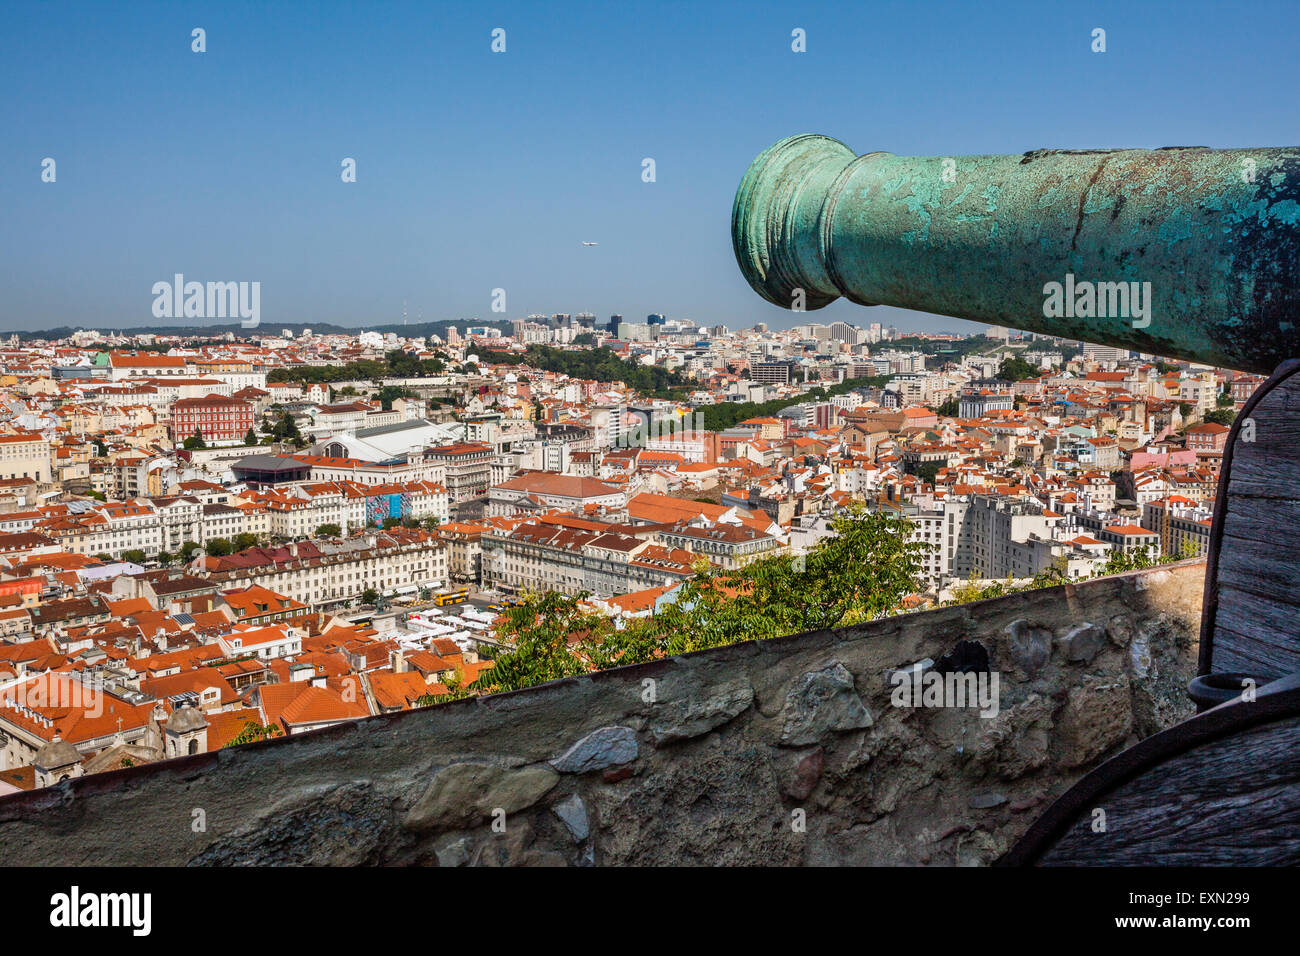 Portugal, Lisbonne, un canon à Castelo de Sao Jorge donnant sur la Baixa Pombaline, le centre-ville de Lisbonne Pombaline Banque D'Images